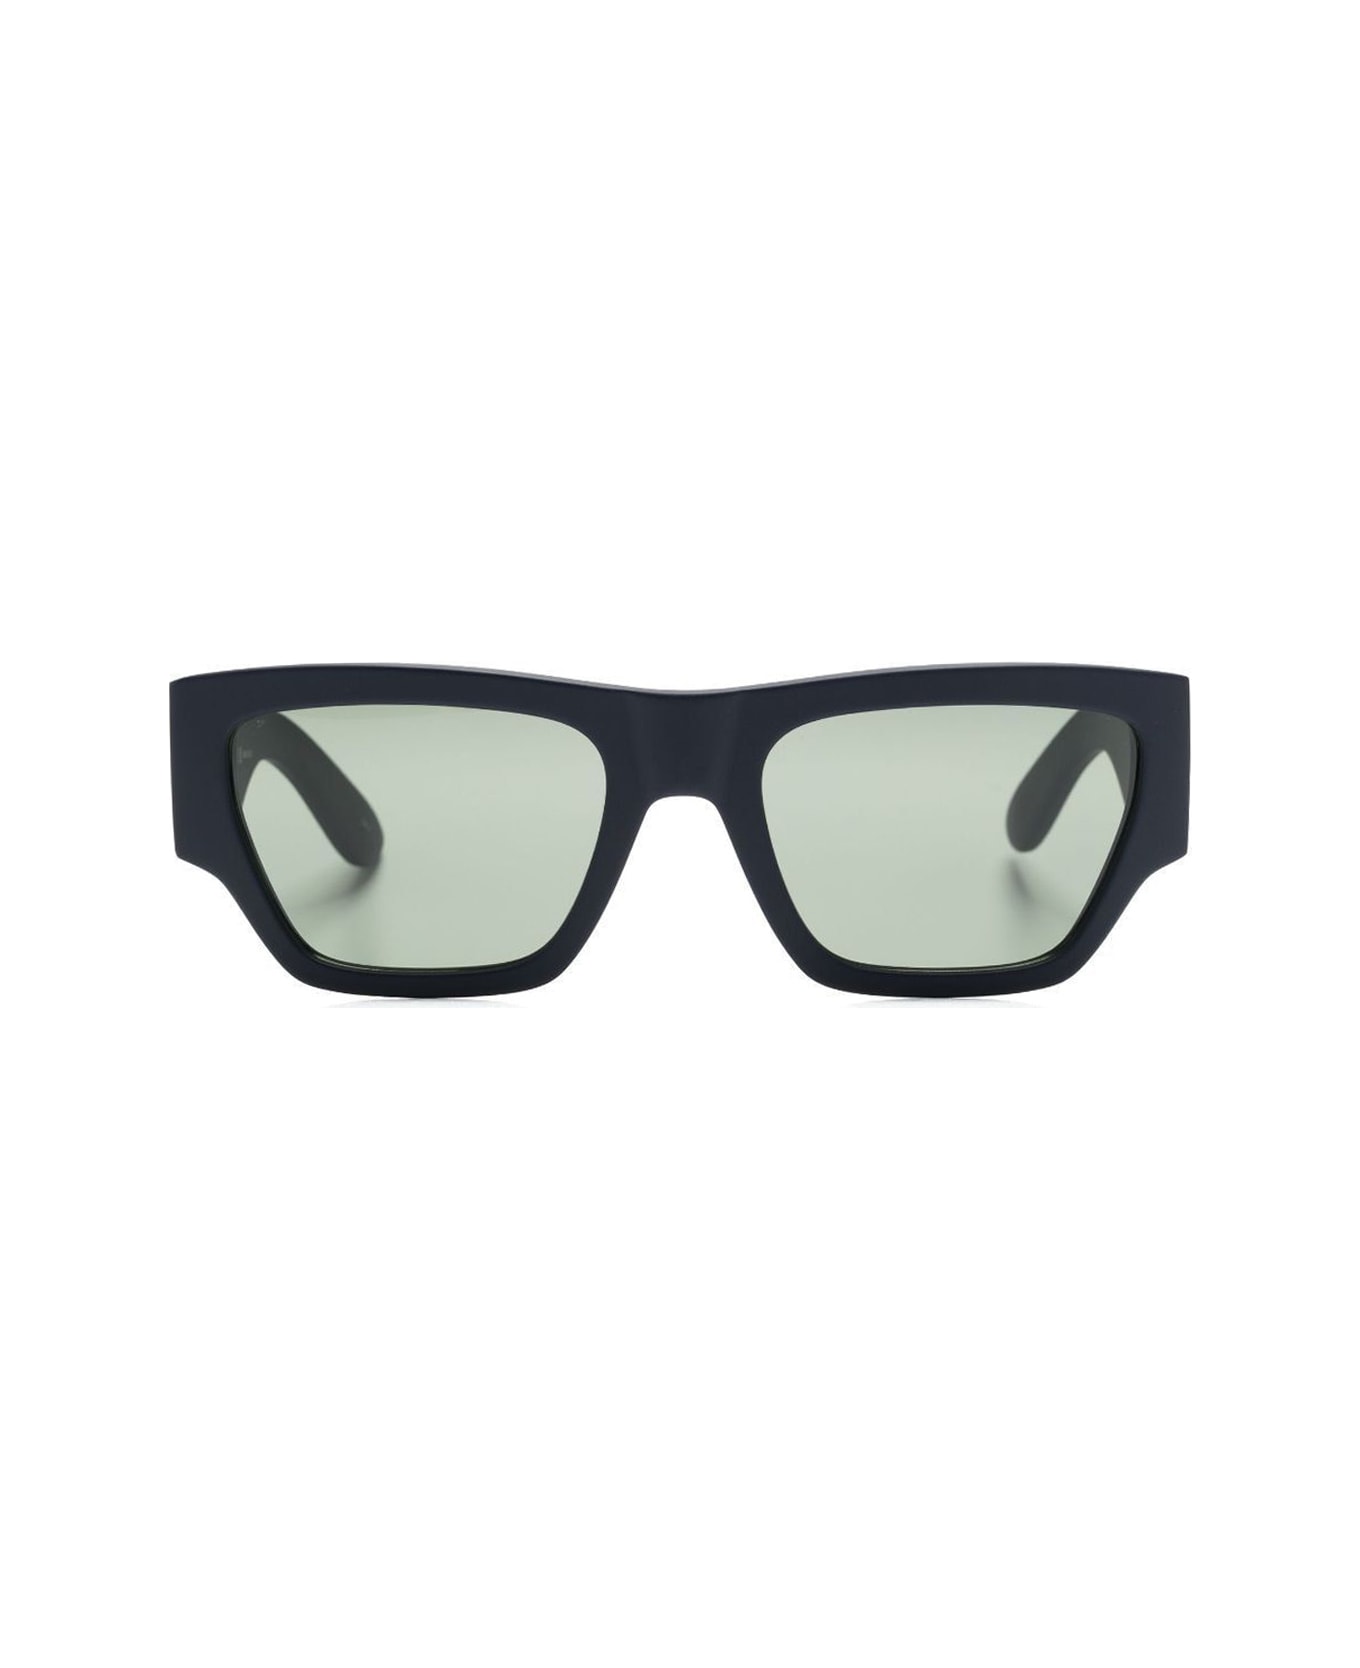 Alexander McQueen Eyewear Mcqueen Angled Sunglasses - Nero サングラス